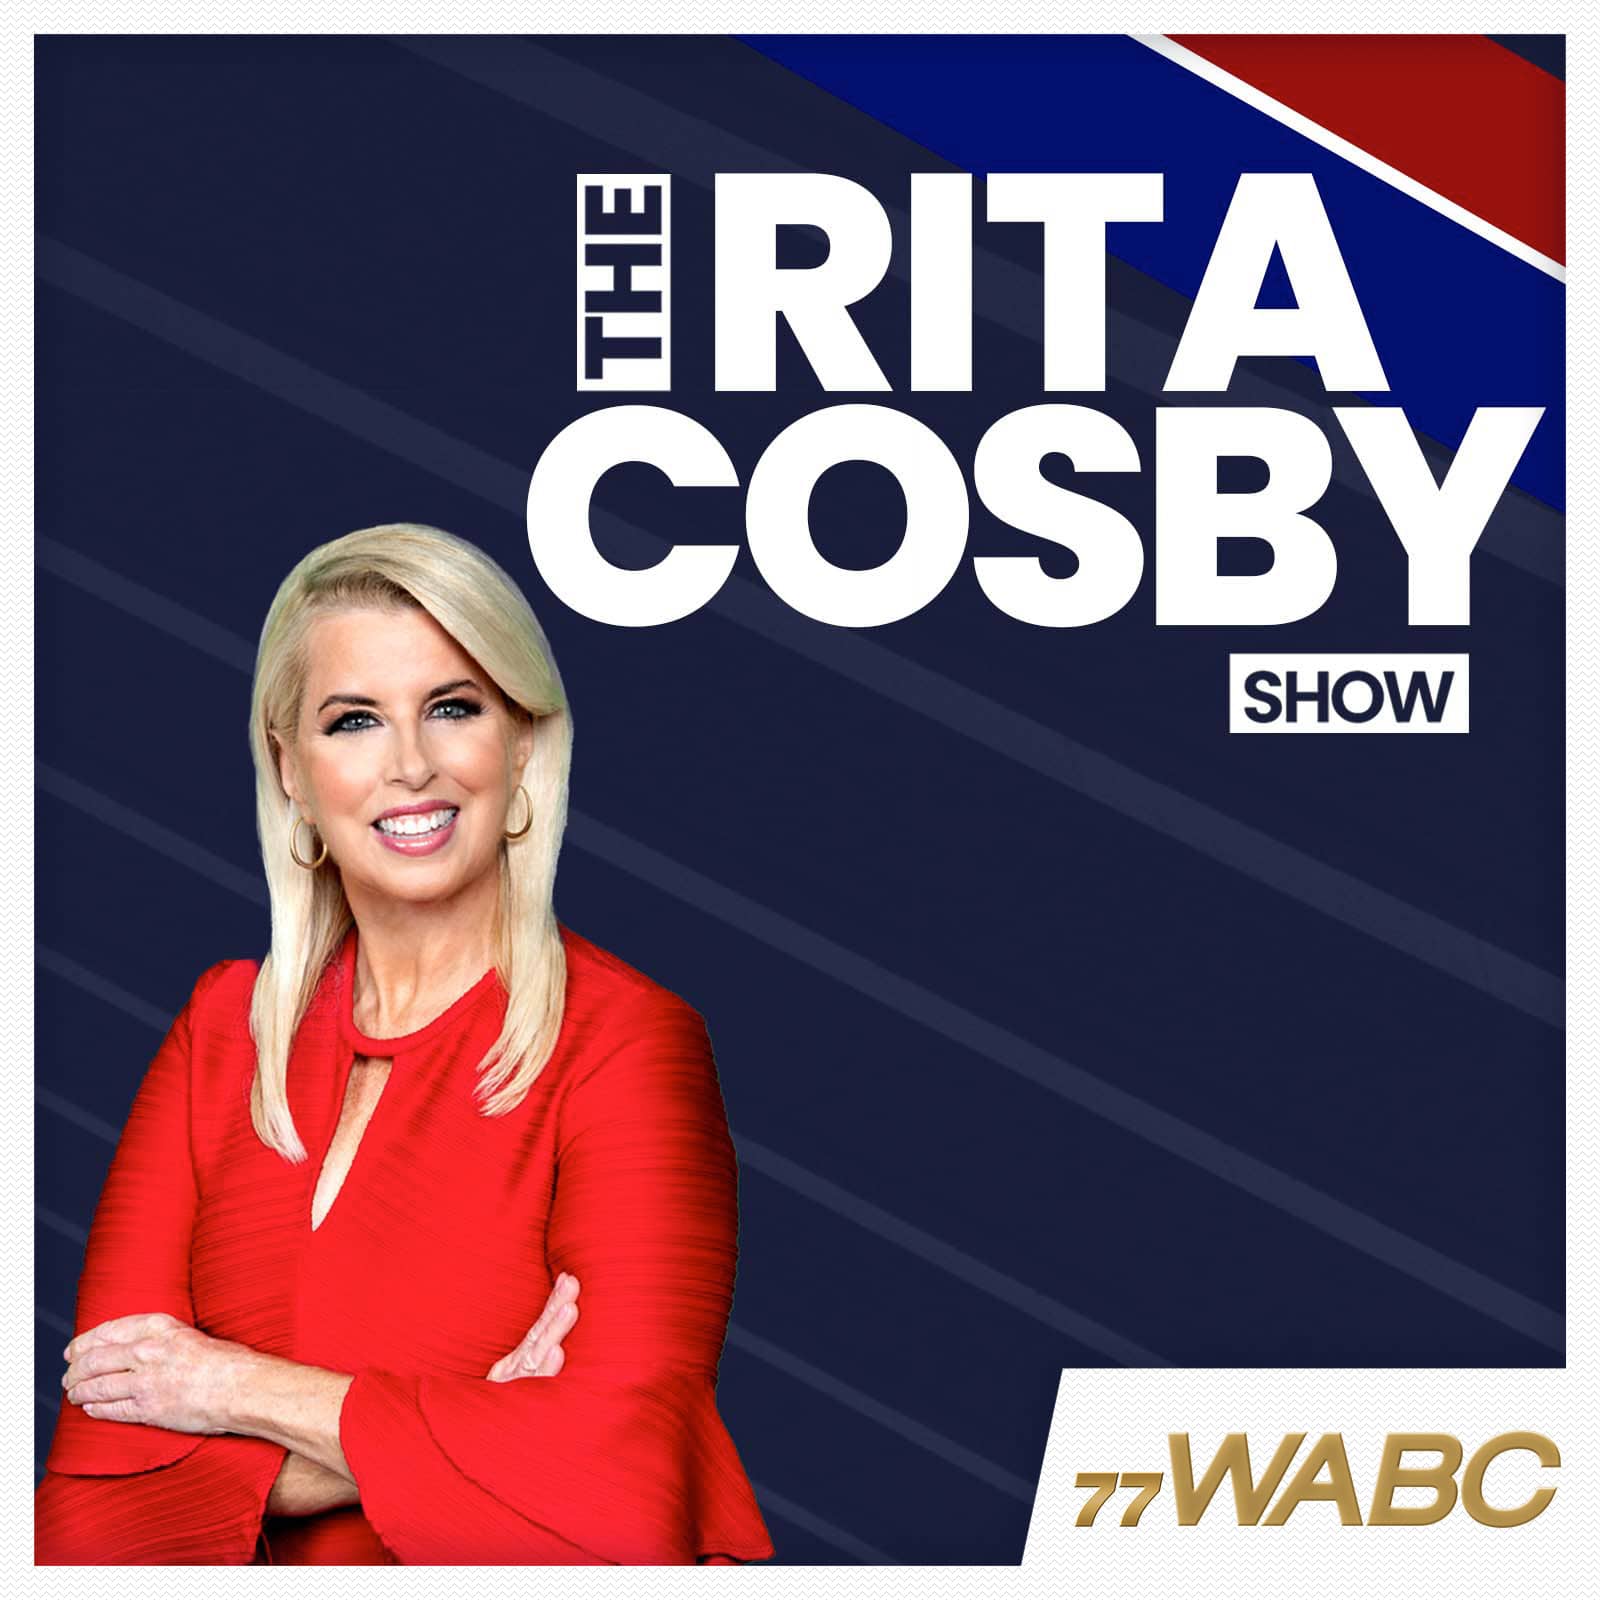 rita-cosby-podcast-new-logo957914